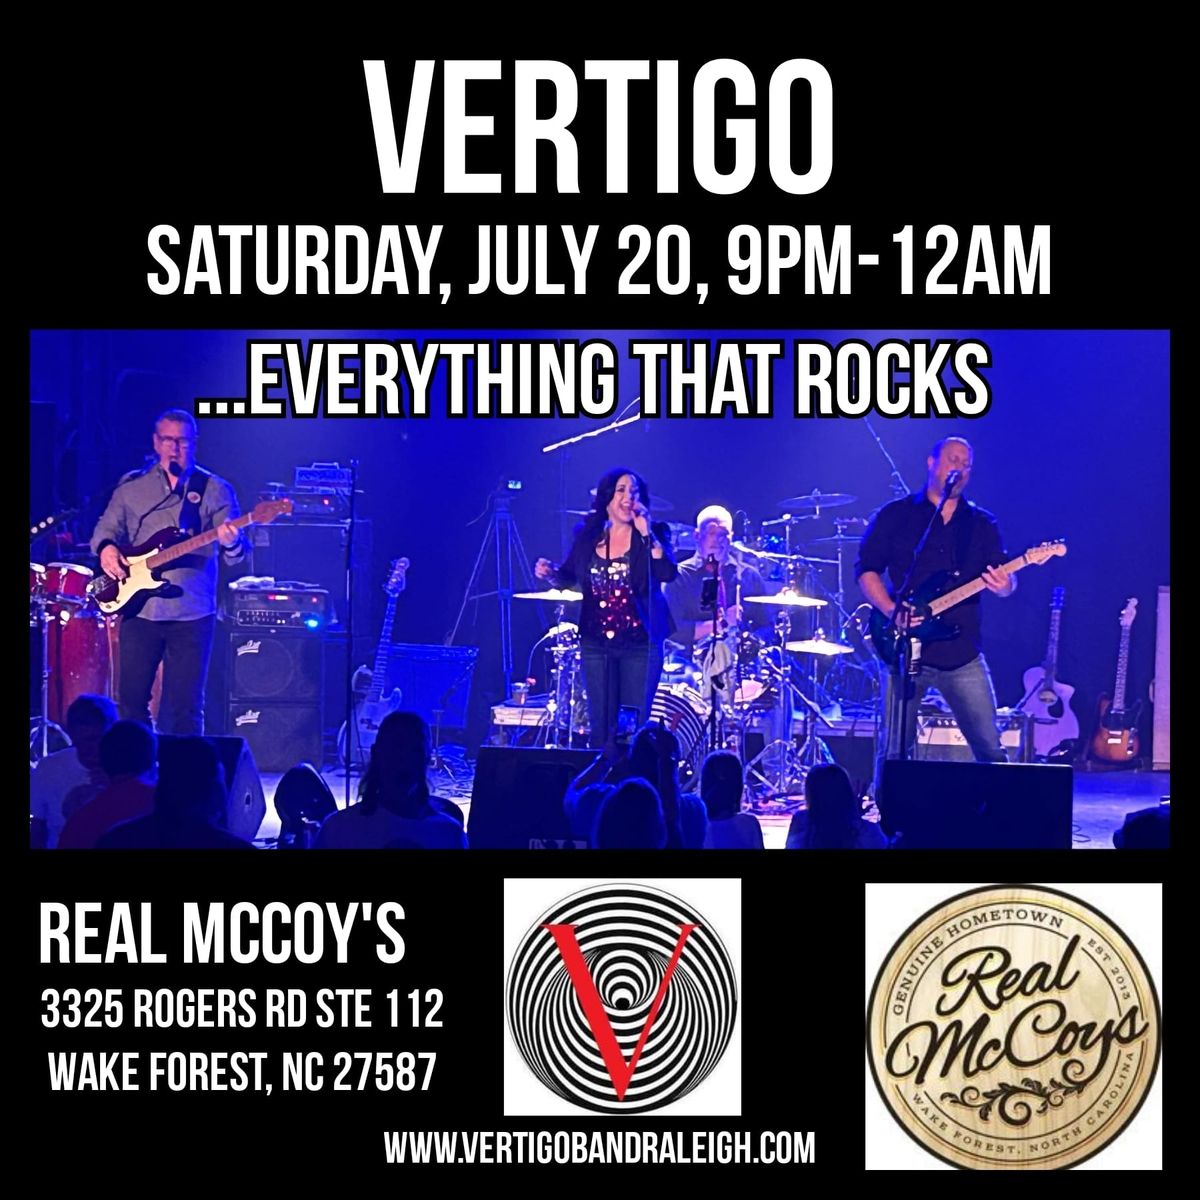 Vertigo returns to rock Real McCoy's 